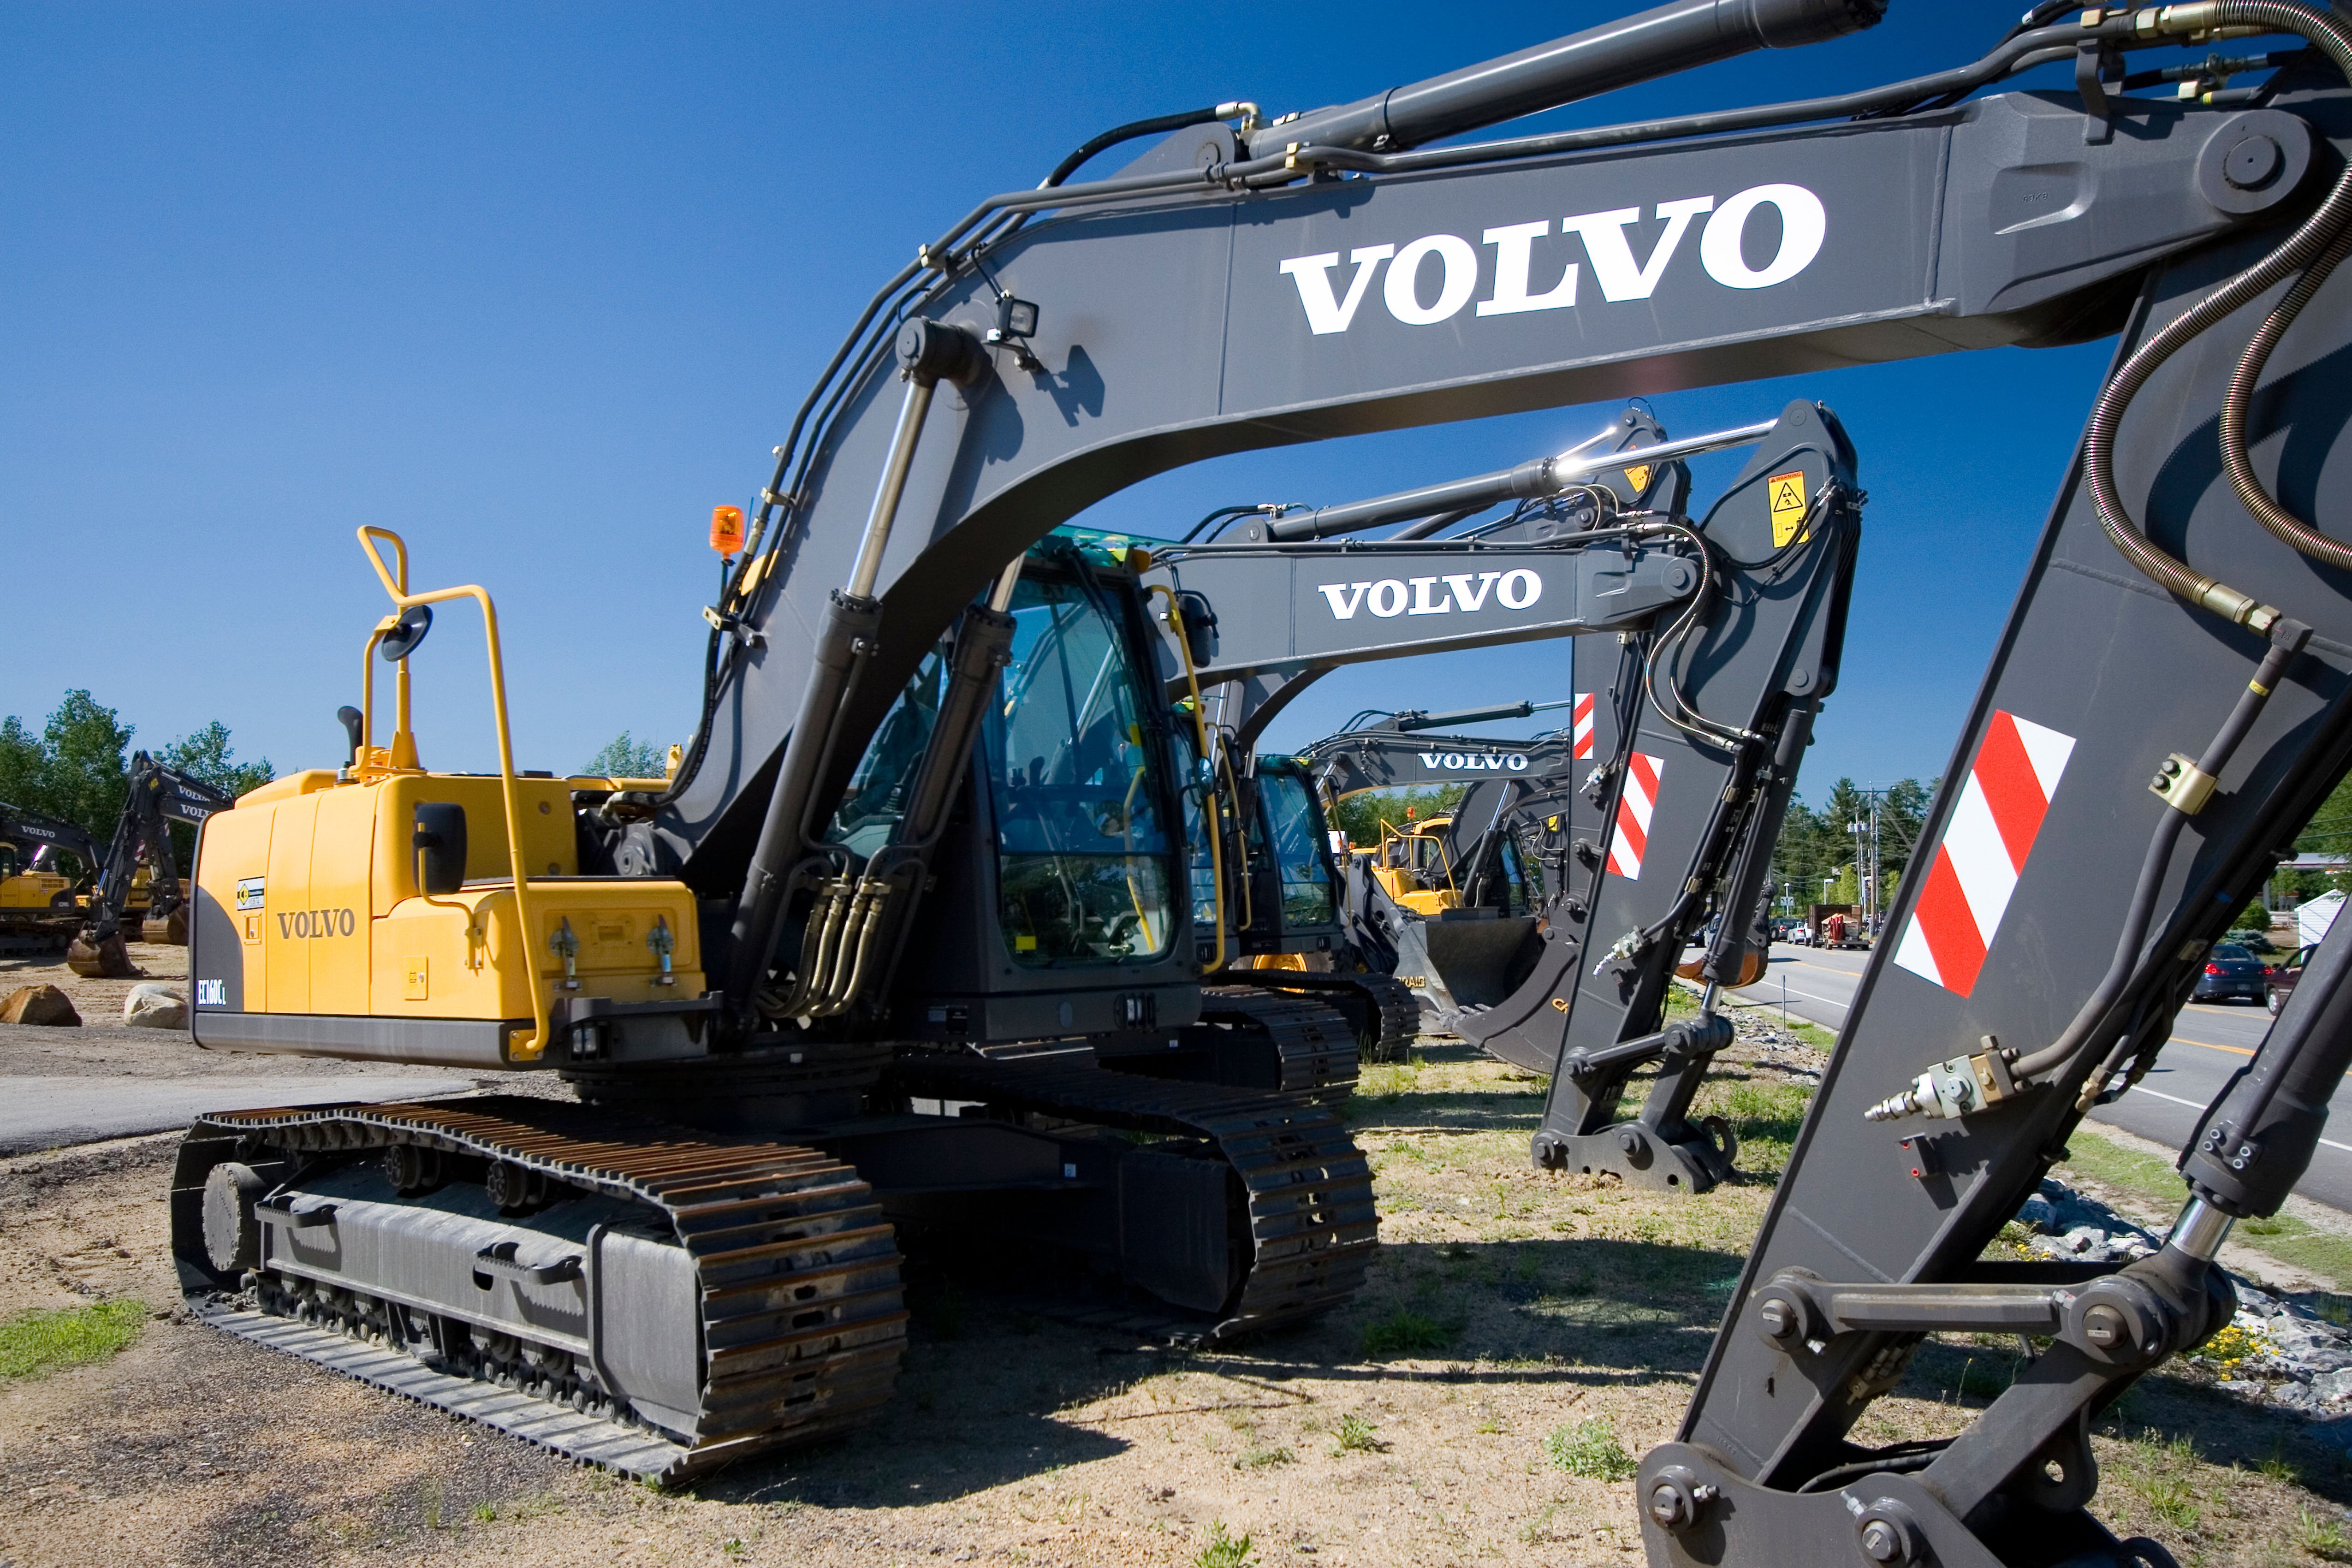 New Volvo excavator